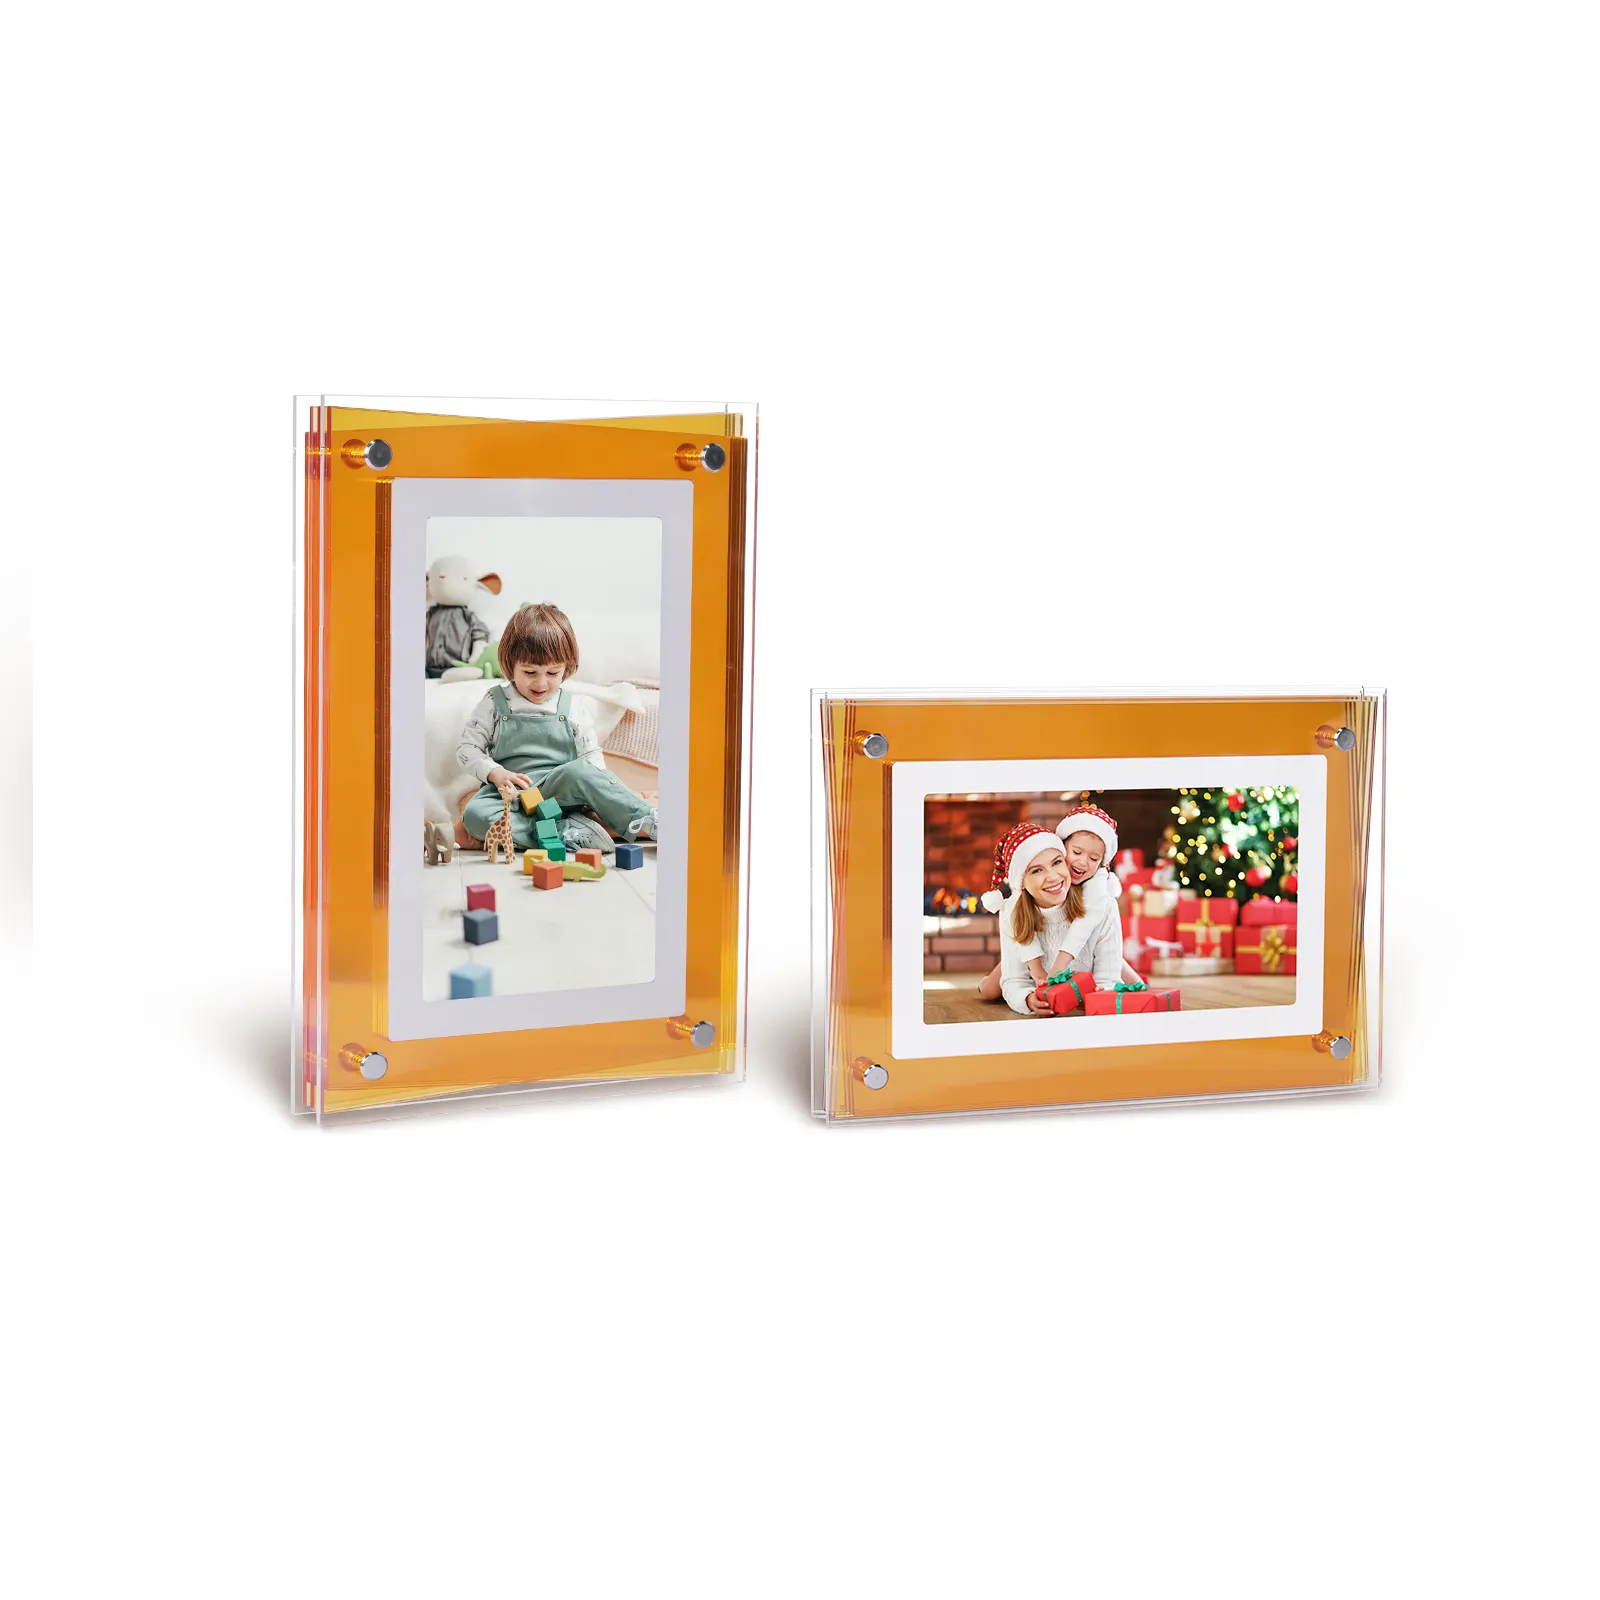 크리스마스 선물 제품 판매 다채로운 NFT 투명 전자 앨범 디지털 아크릴 플레이어 motio